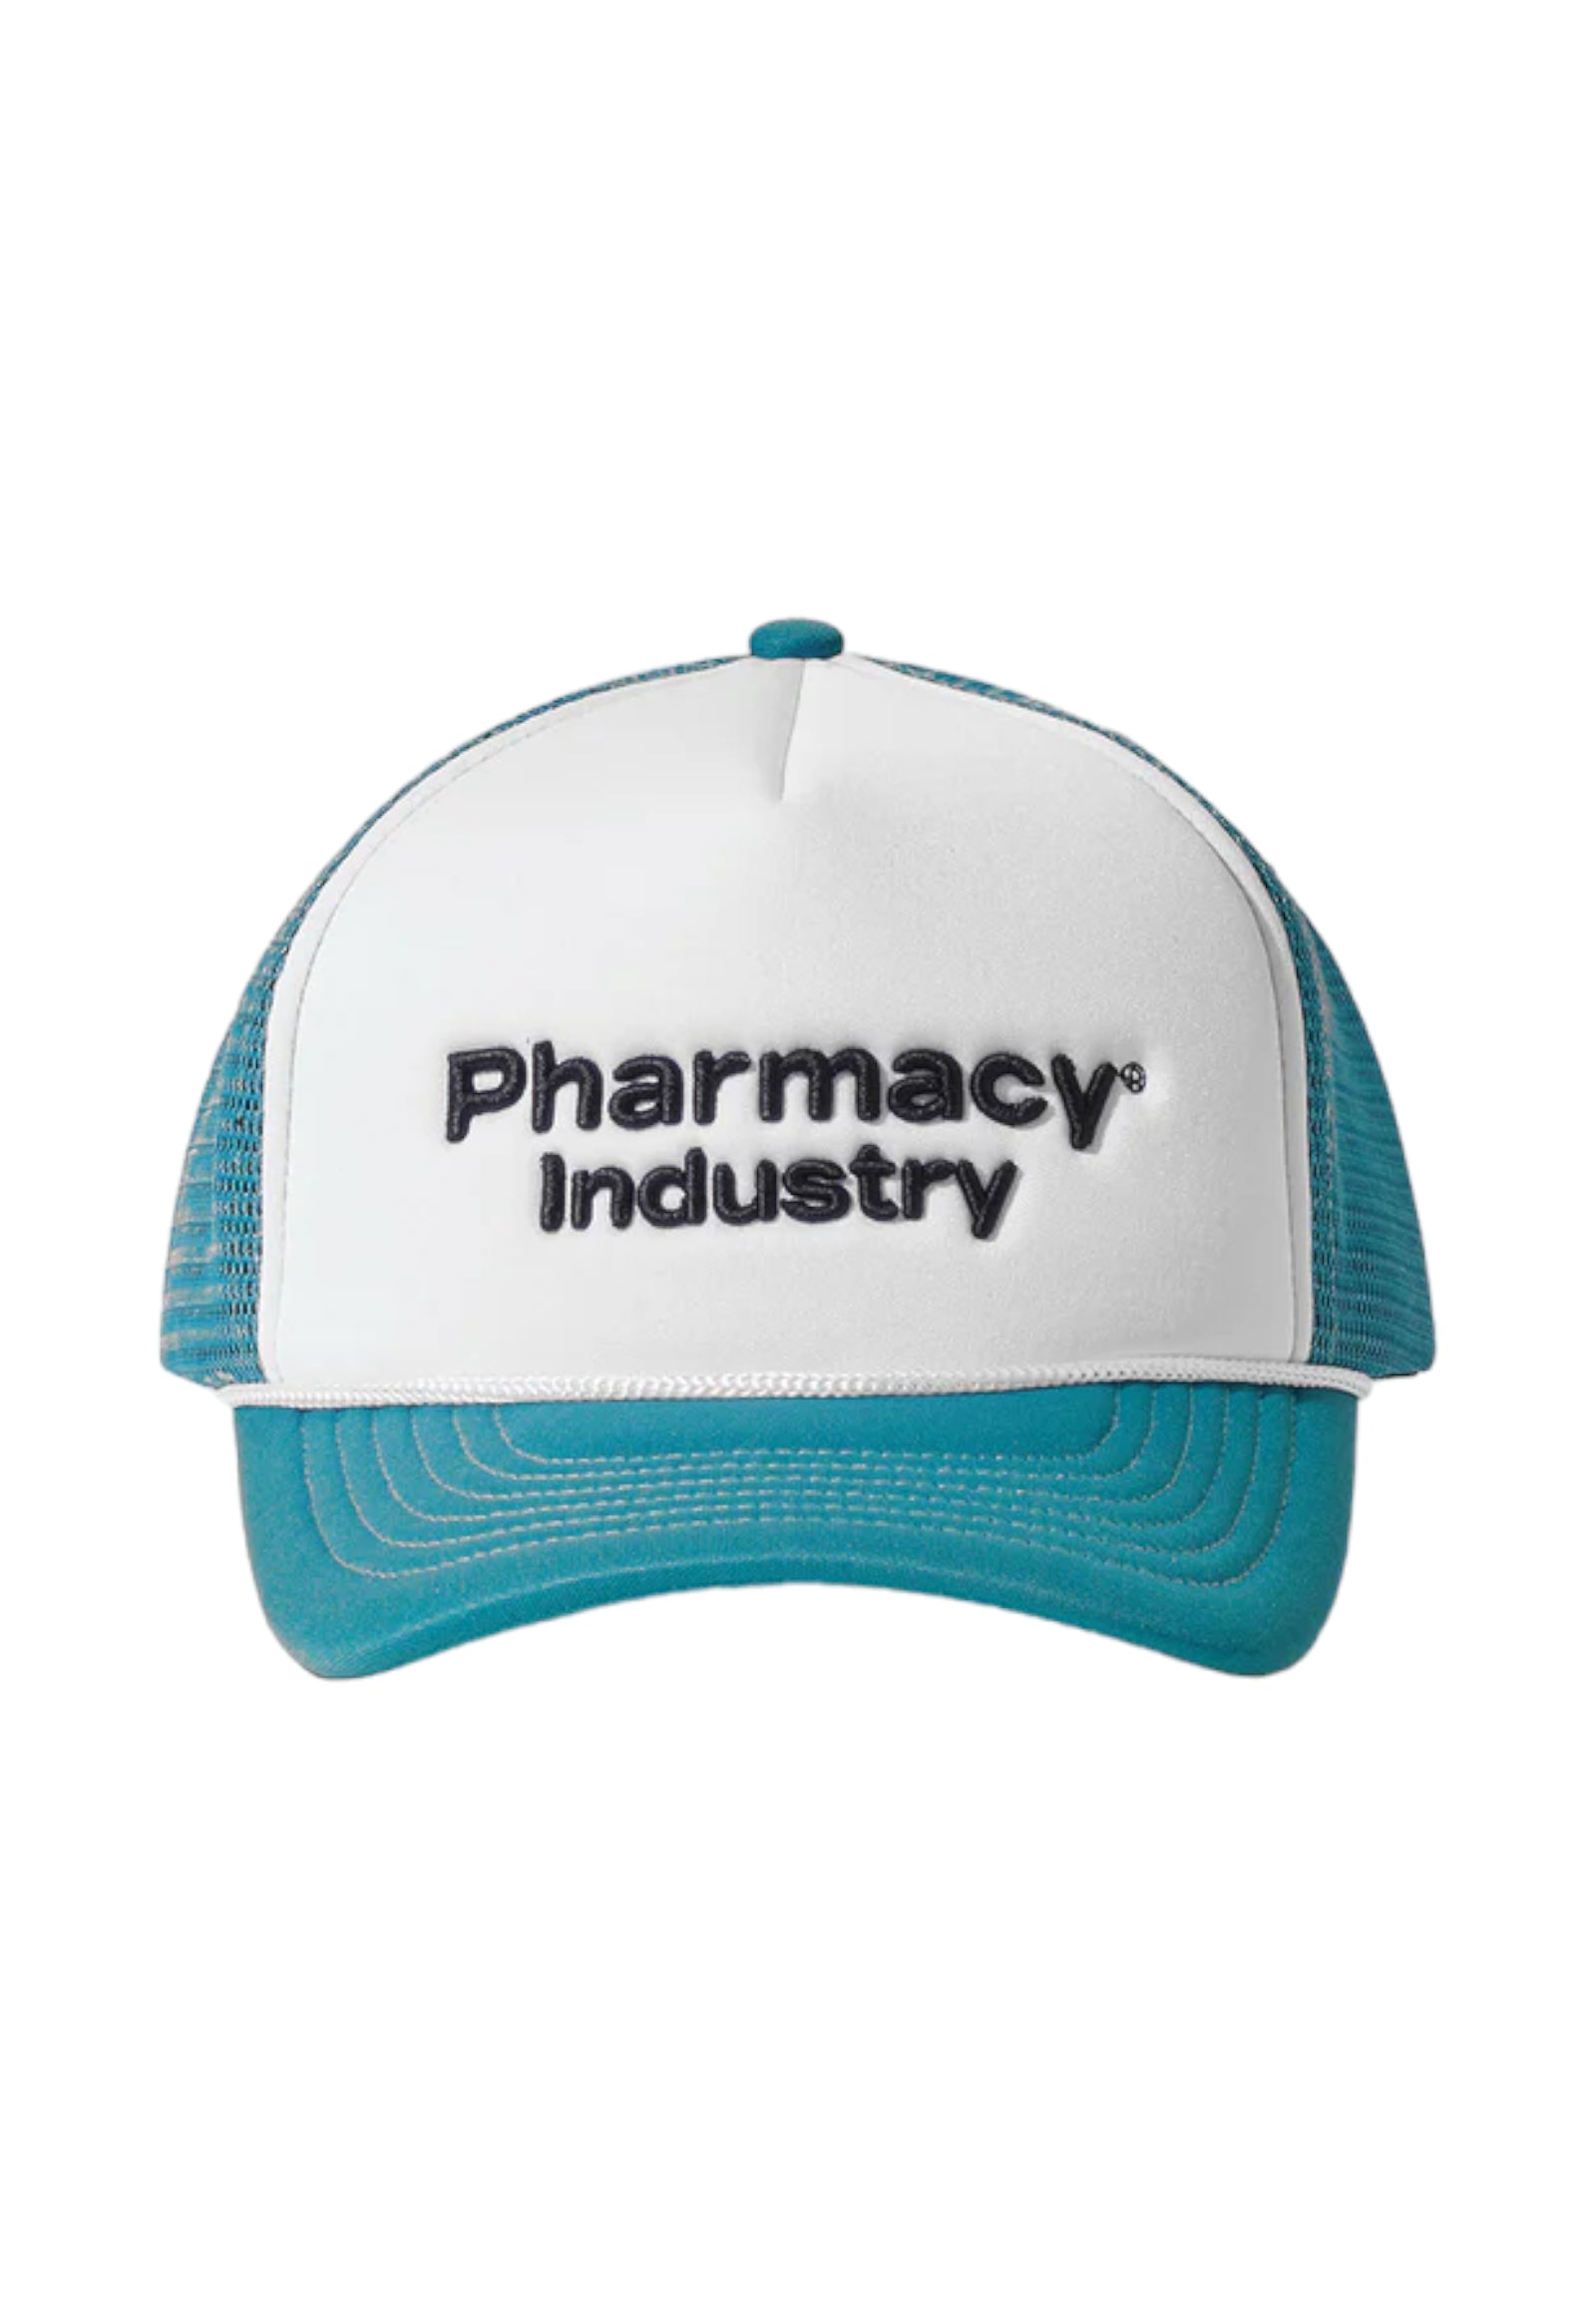 Pharmacy Industry Cappello Da Baseball Phacm00002 Verde Lago